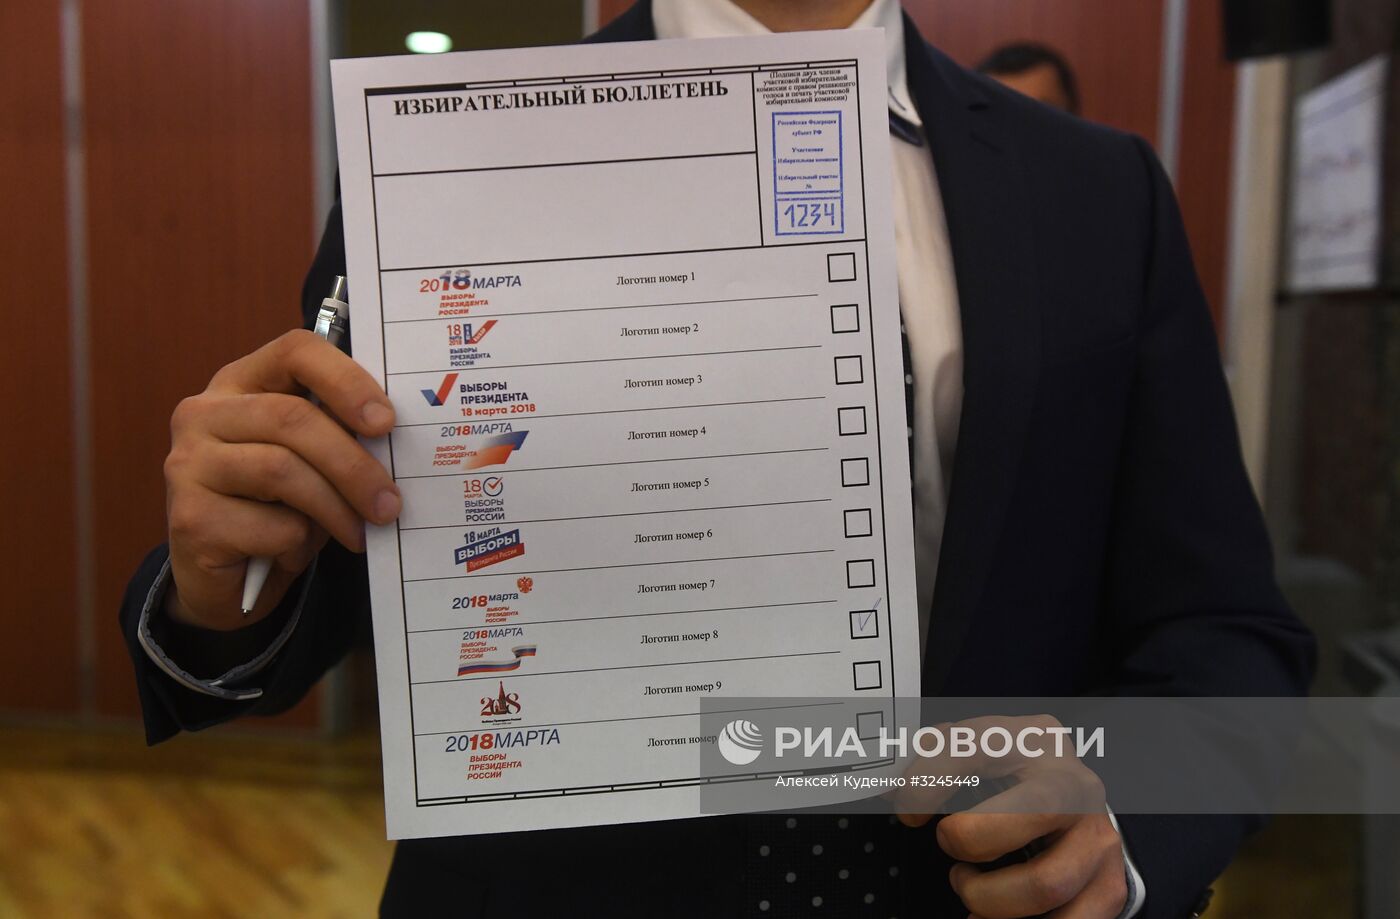 Презентация визуальной концепции информирования избирателей о выборах президента РФ